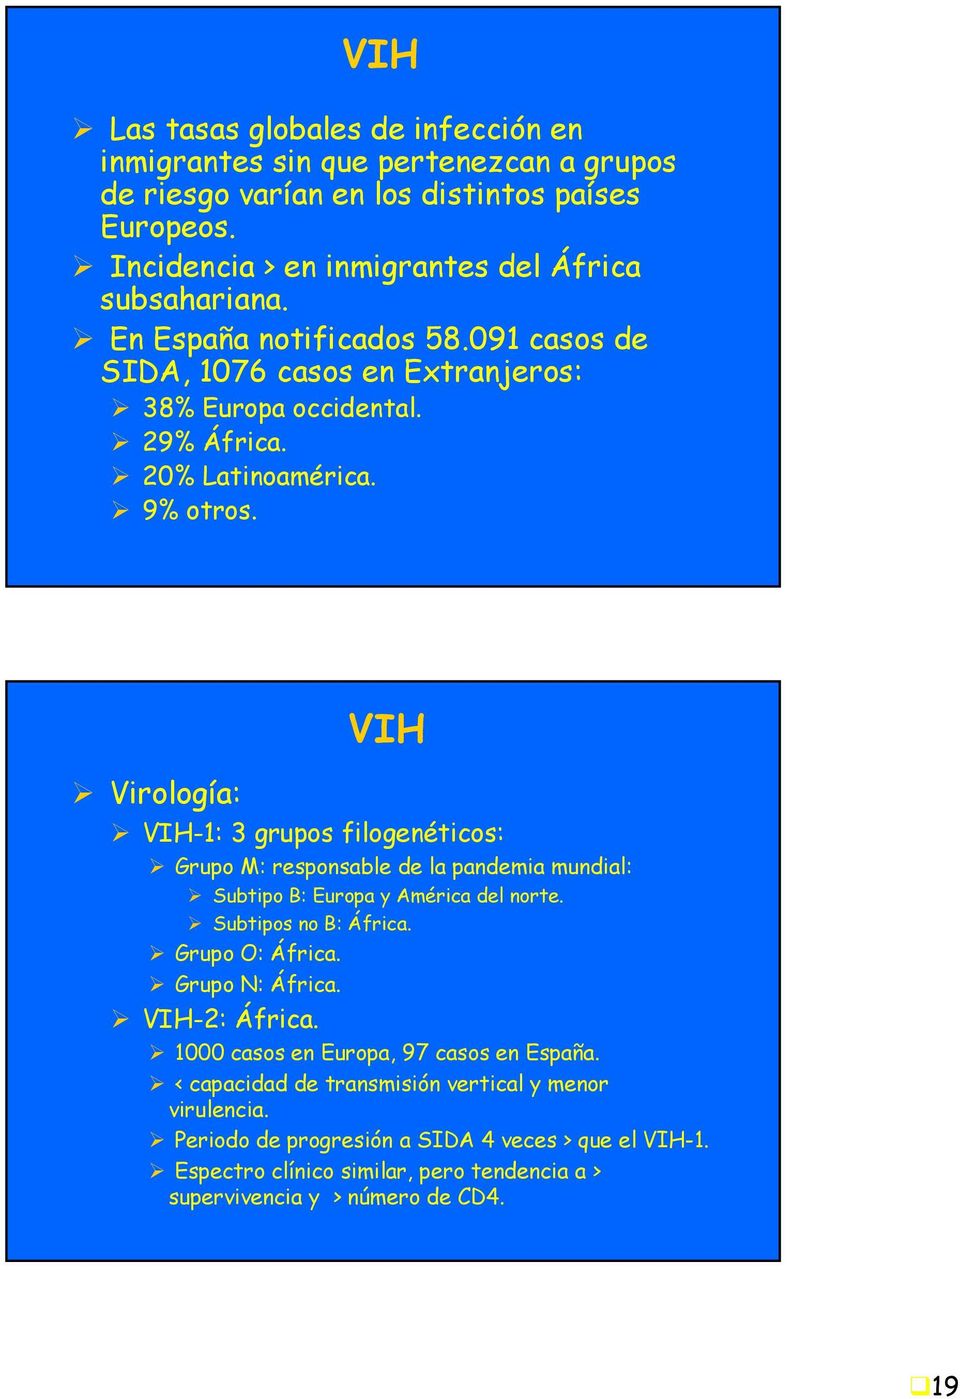 VIH Virología: VIH-1: 3 grupos filogenéticos: Grupo M: responsable de la pandemia mundial: Subtipo B: Europa y América del norte. Subtipos no B: África. Grupo O: África. Grupo N: África.